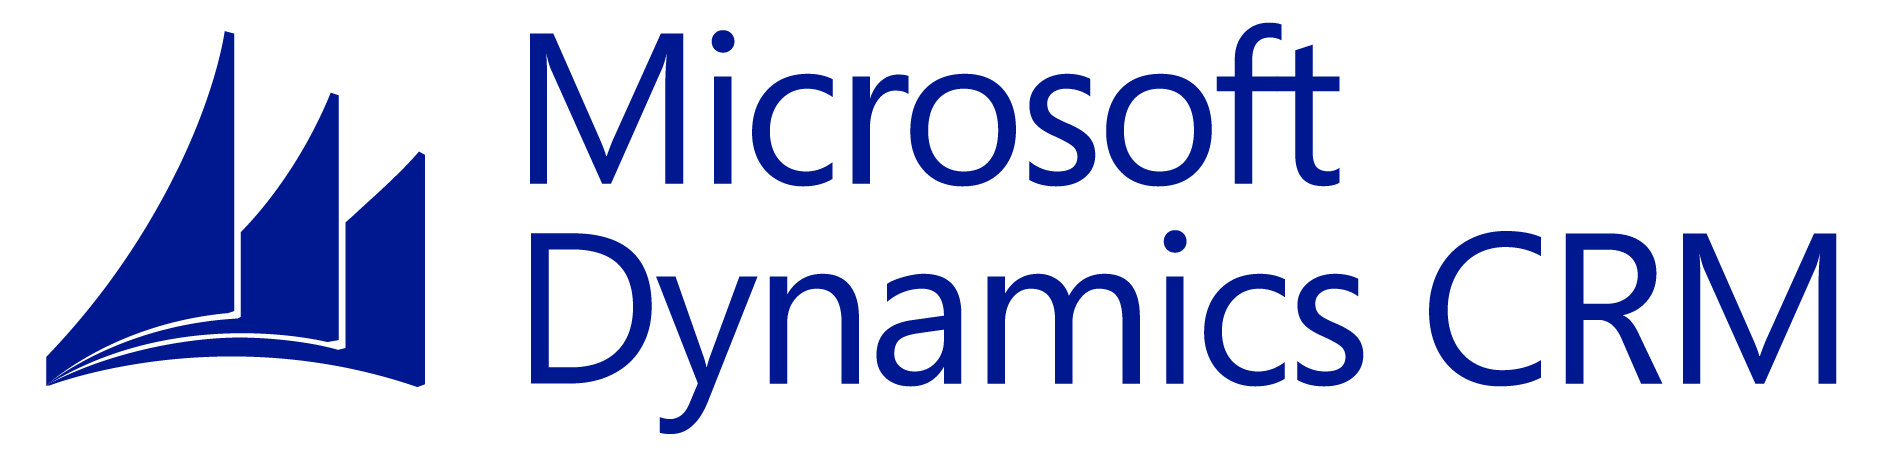 Microsoft Dynamics Logo - Microsoft Dynamics Logo